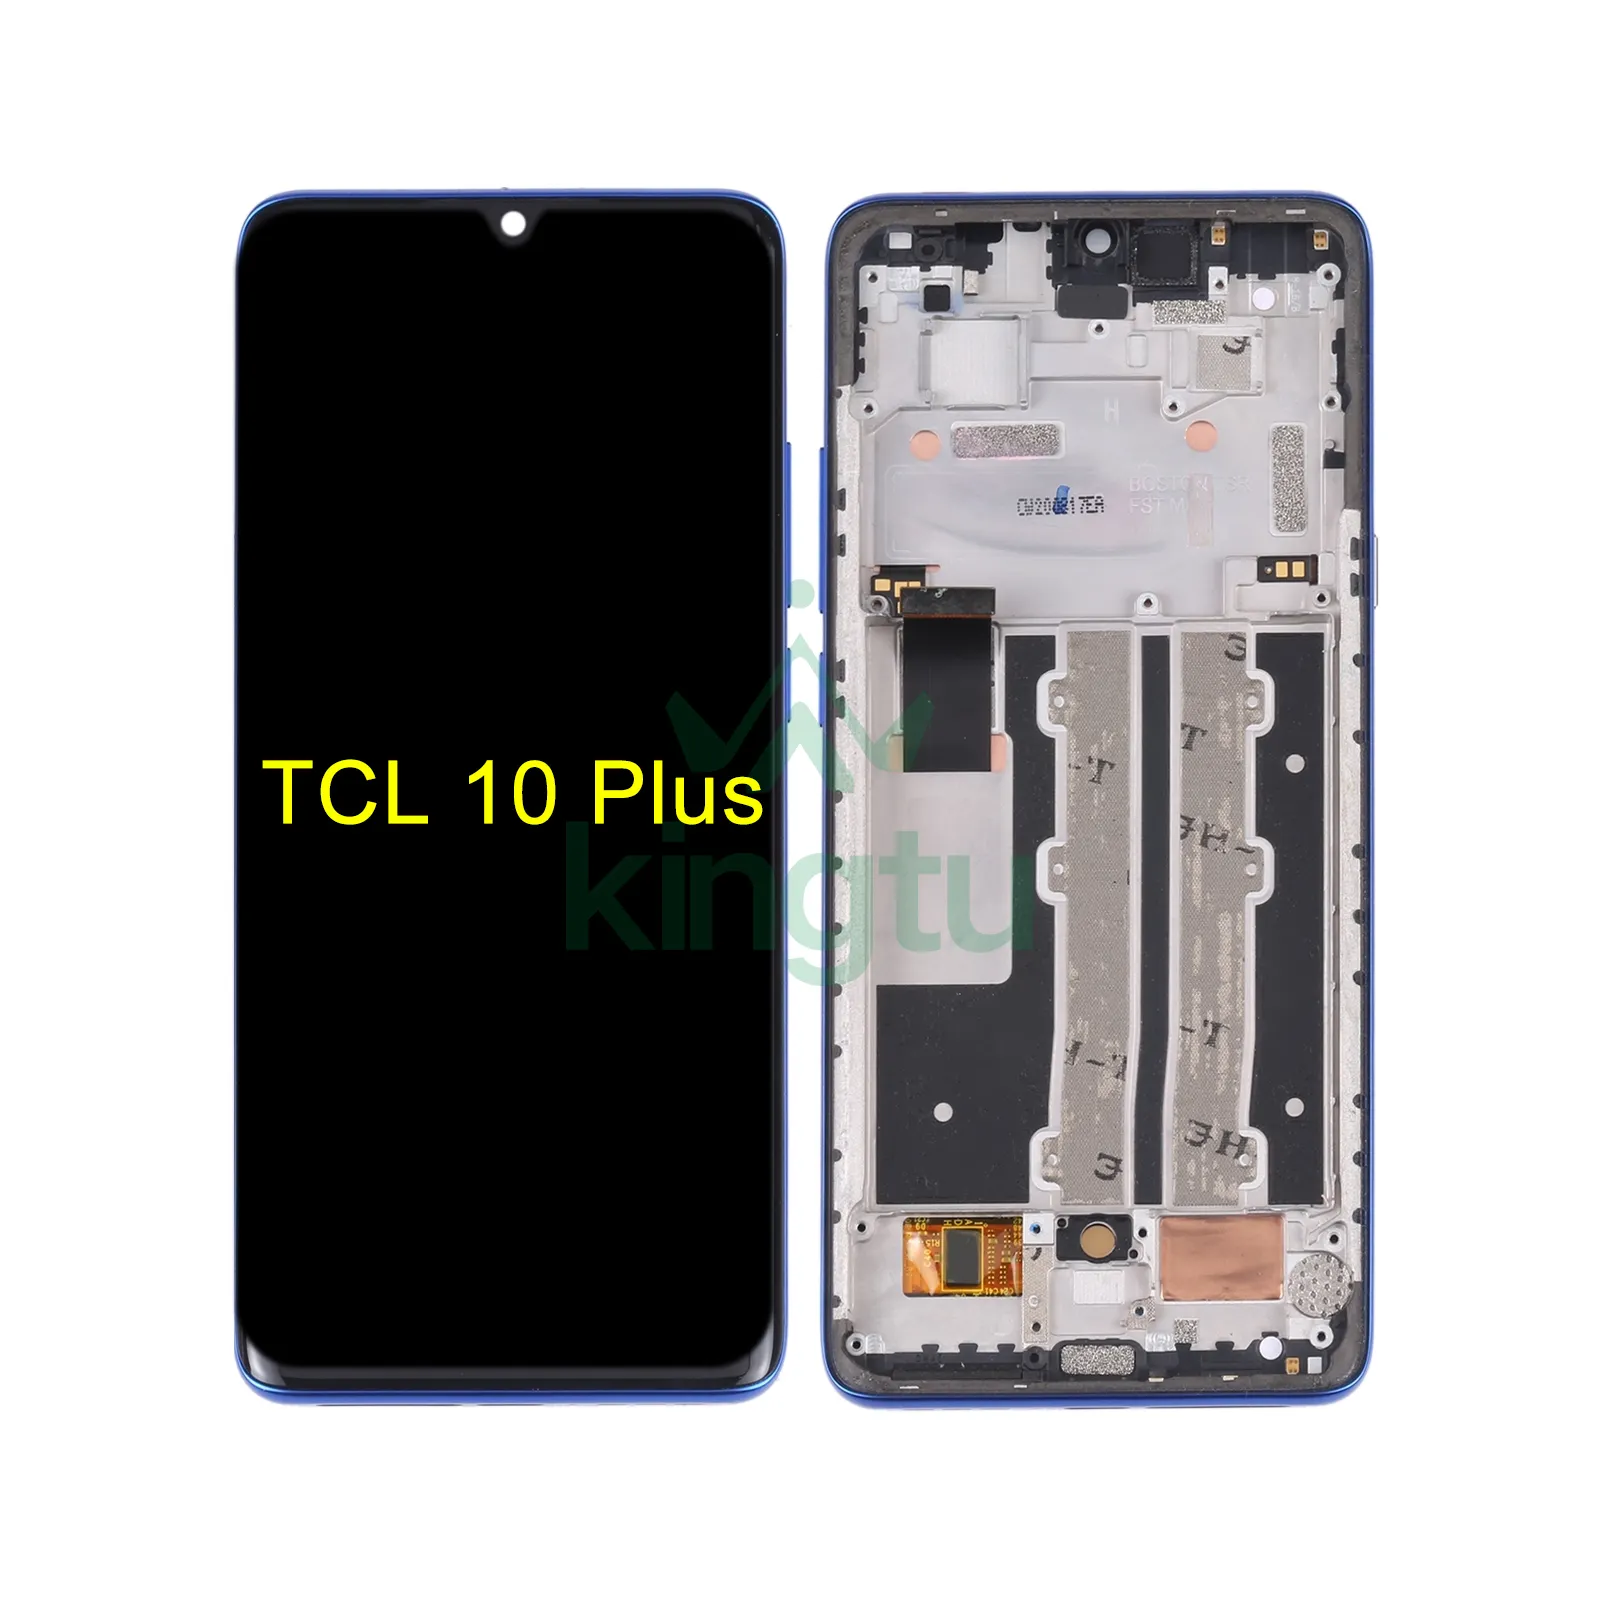 LCD 터치 스크린 디스플레이 후면 패널 교체 TCL 10 플러스 T782H 40 SE 408 403 405 30XL 30 L 액세서리 콤보